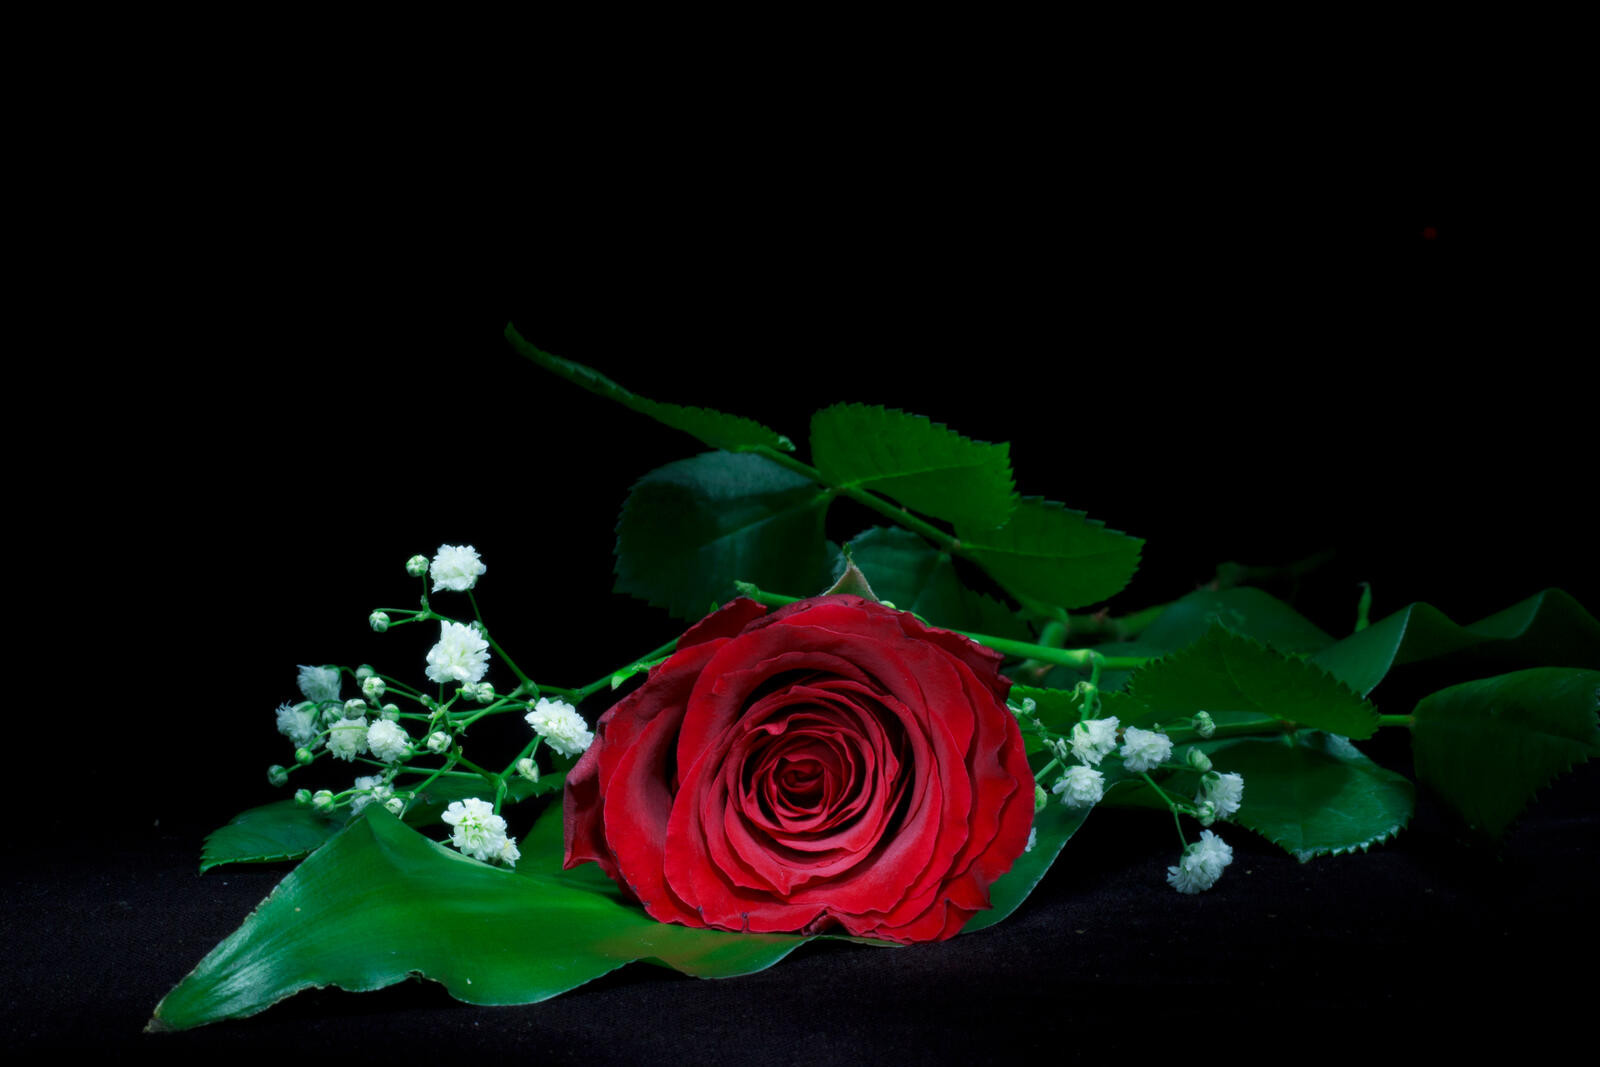 Обои роза цветок чёрный фон на рабочий стол